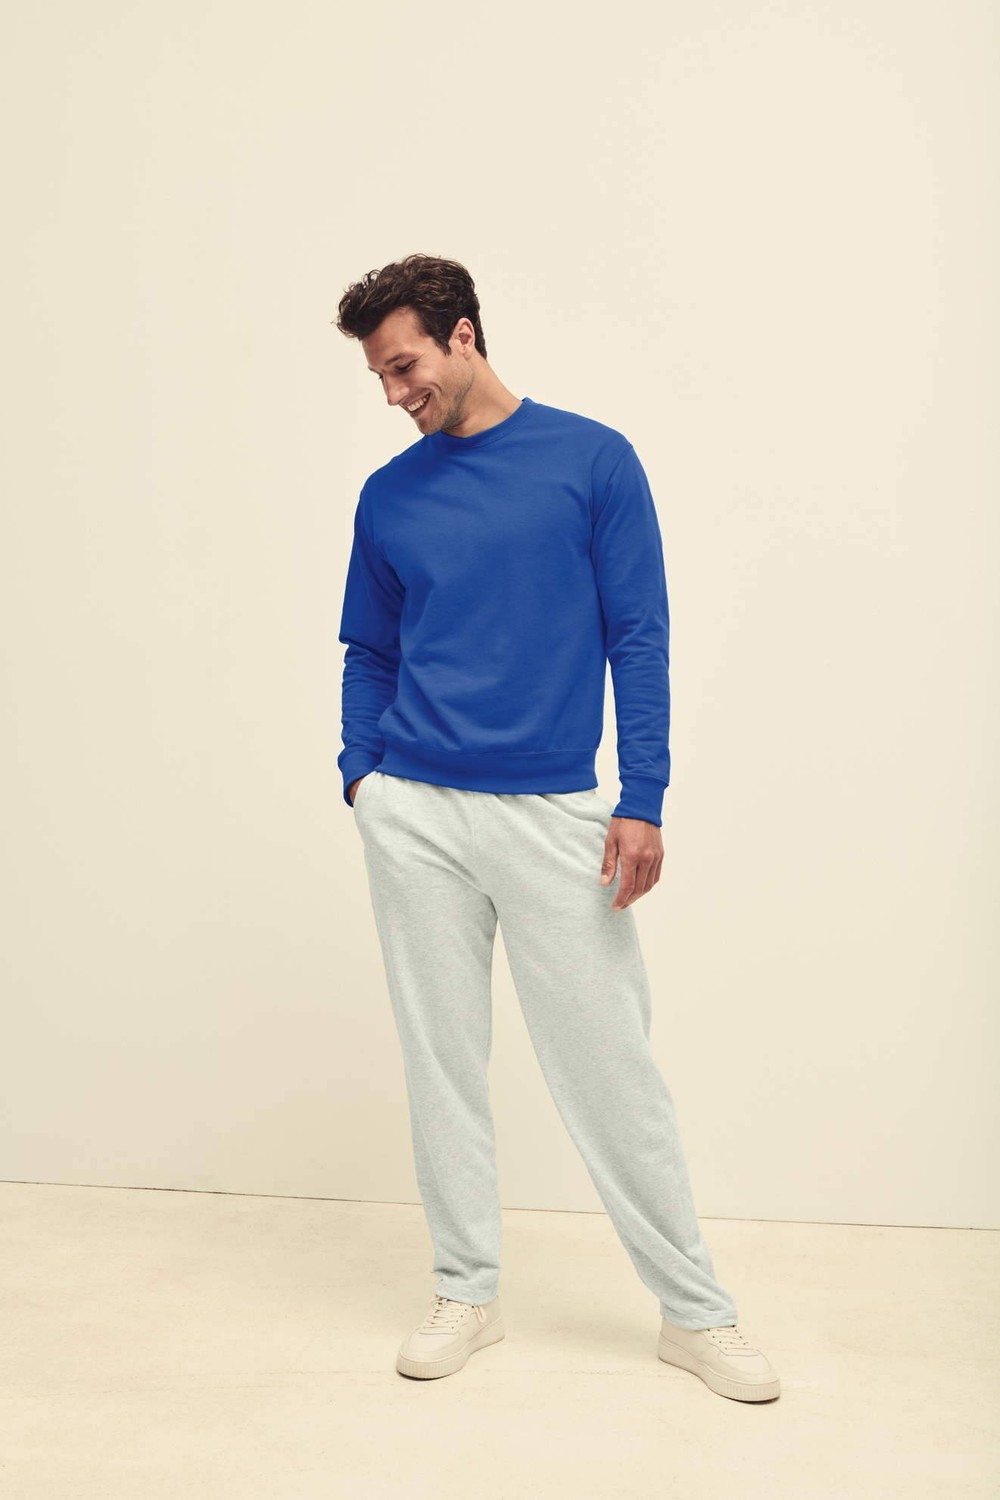 Blue Men's Sweatshirt Lightweight Set-in-Sweat Sweat Fruit of the Loom